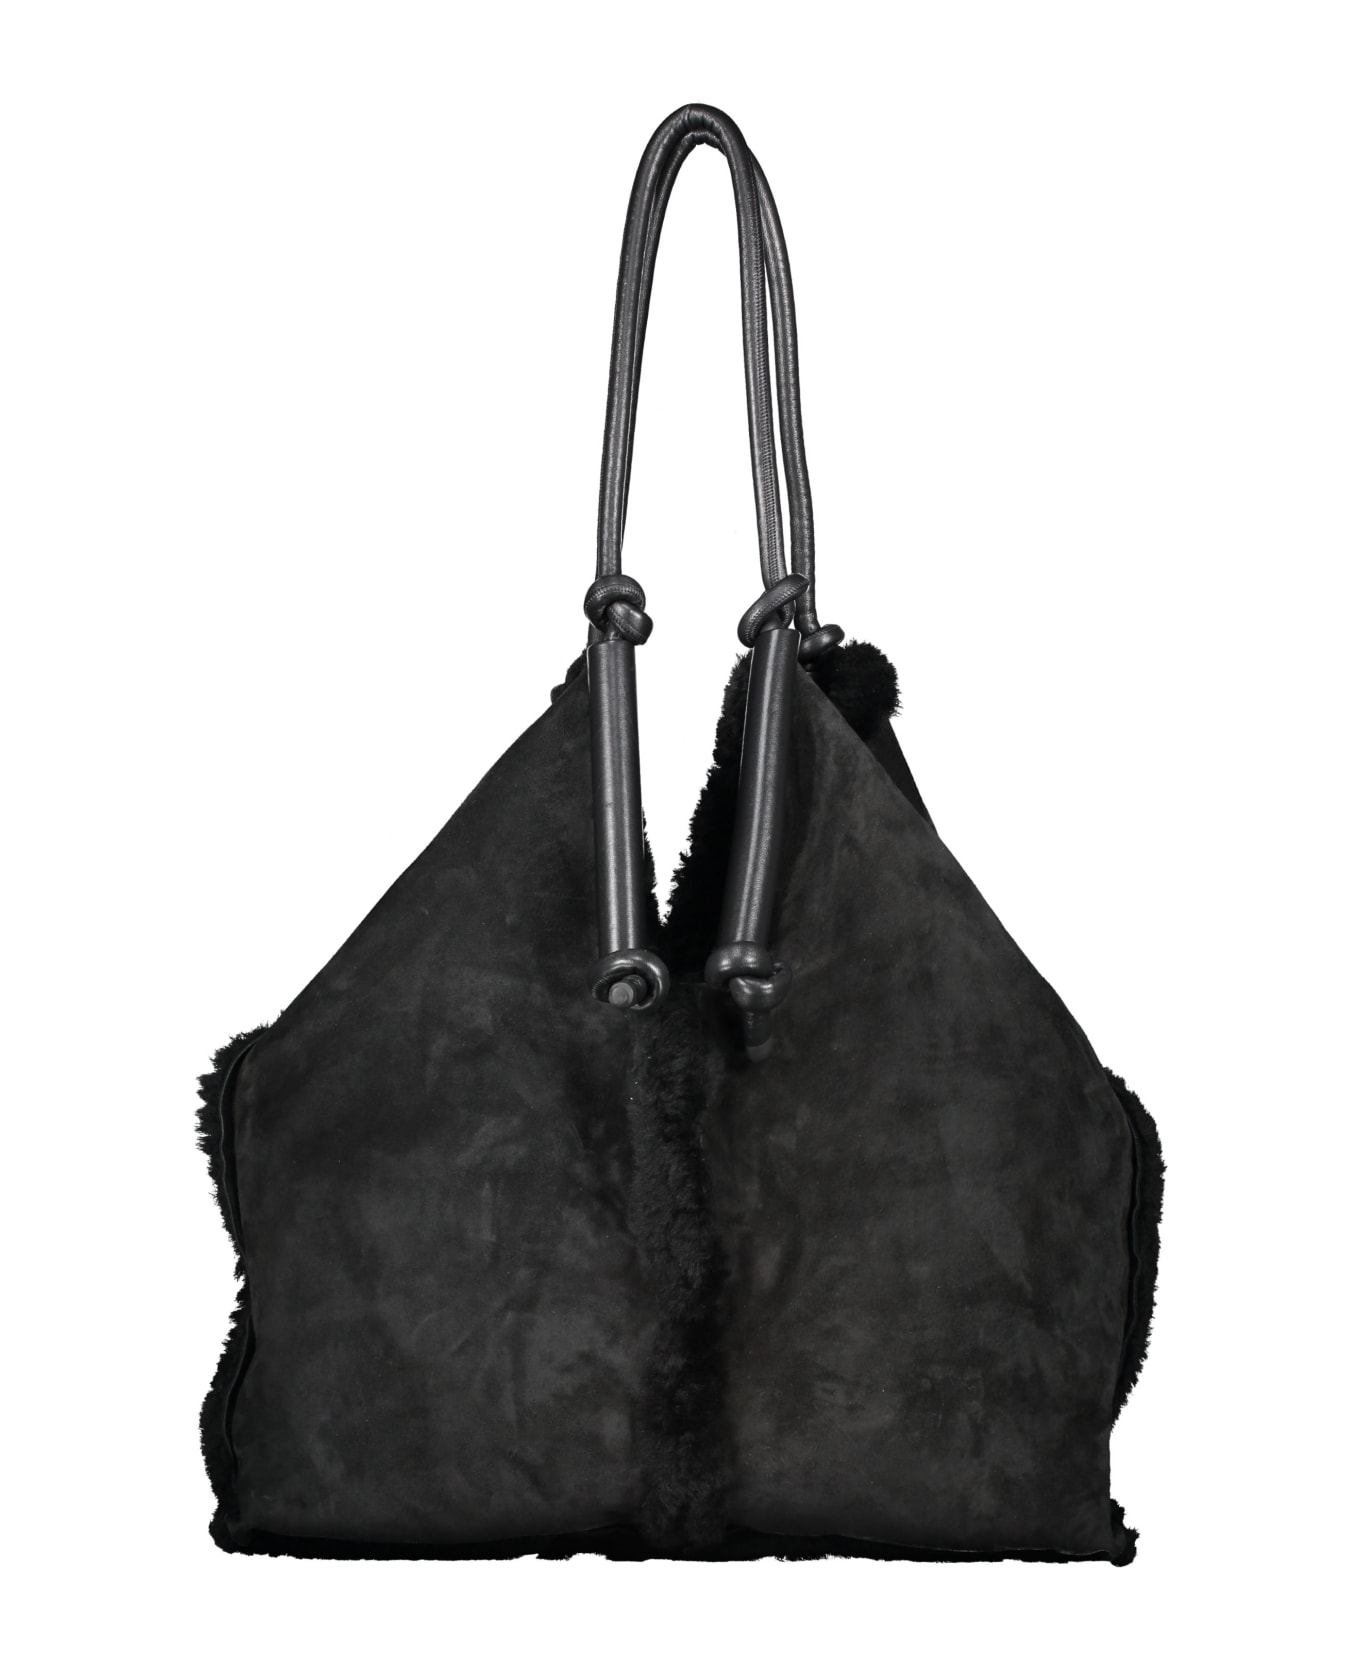 Bottega Veneta Tote Bag - black